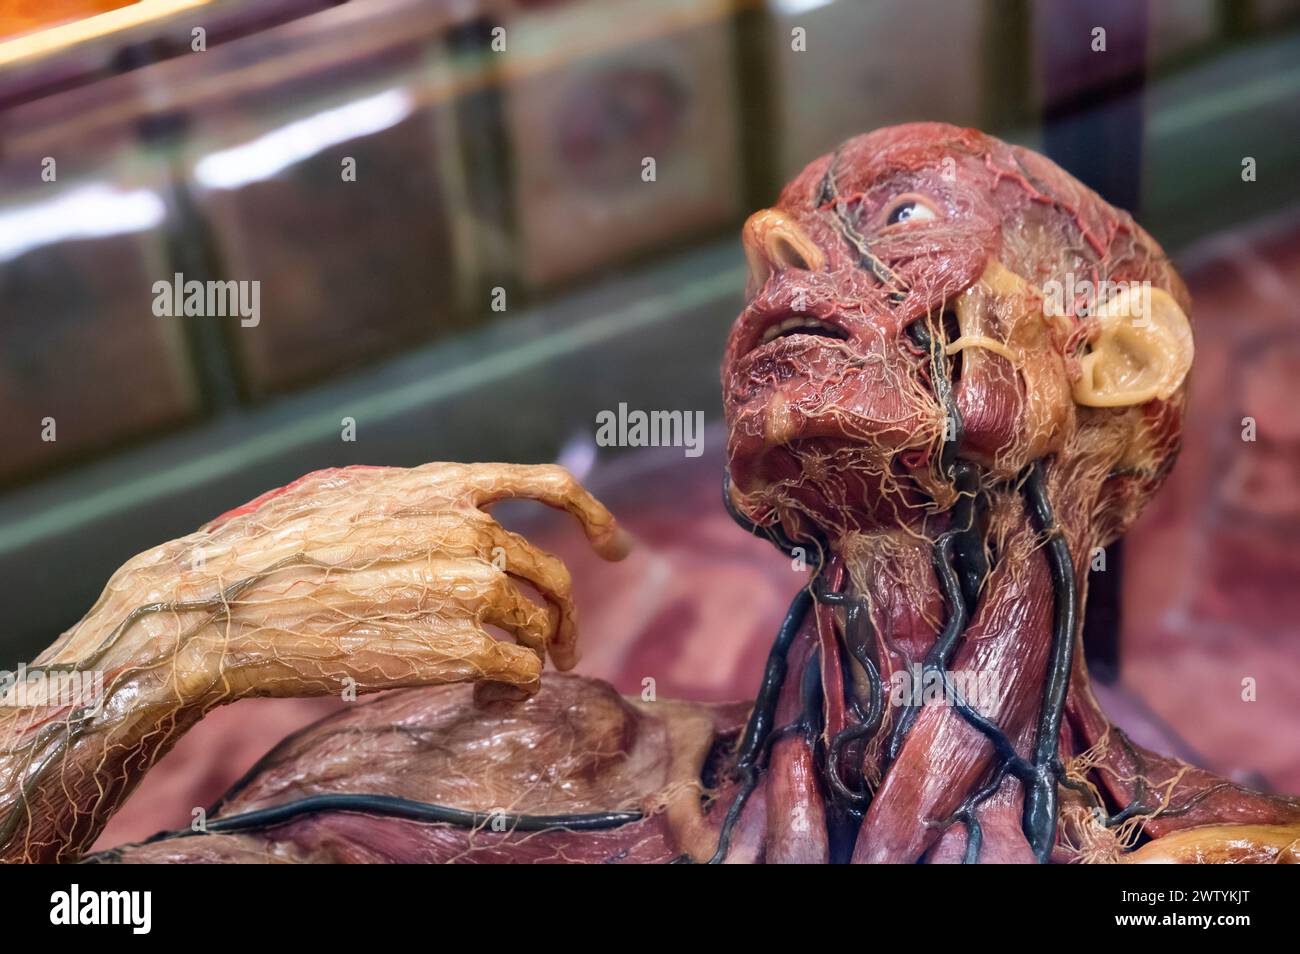 Modèle anatomique en cire d'un homme montrant des organes internes, dans une vitrine en bois. Banque D'Images